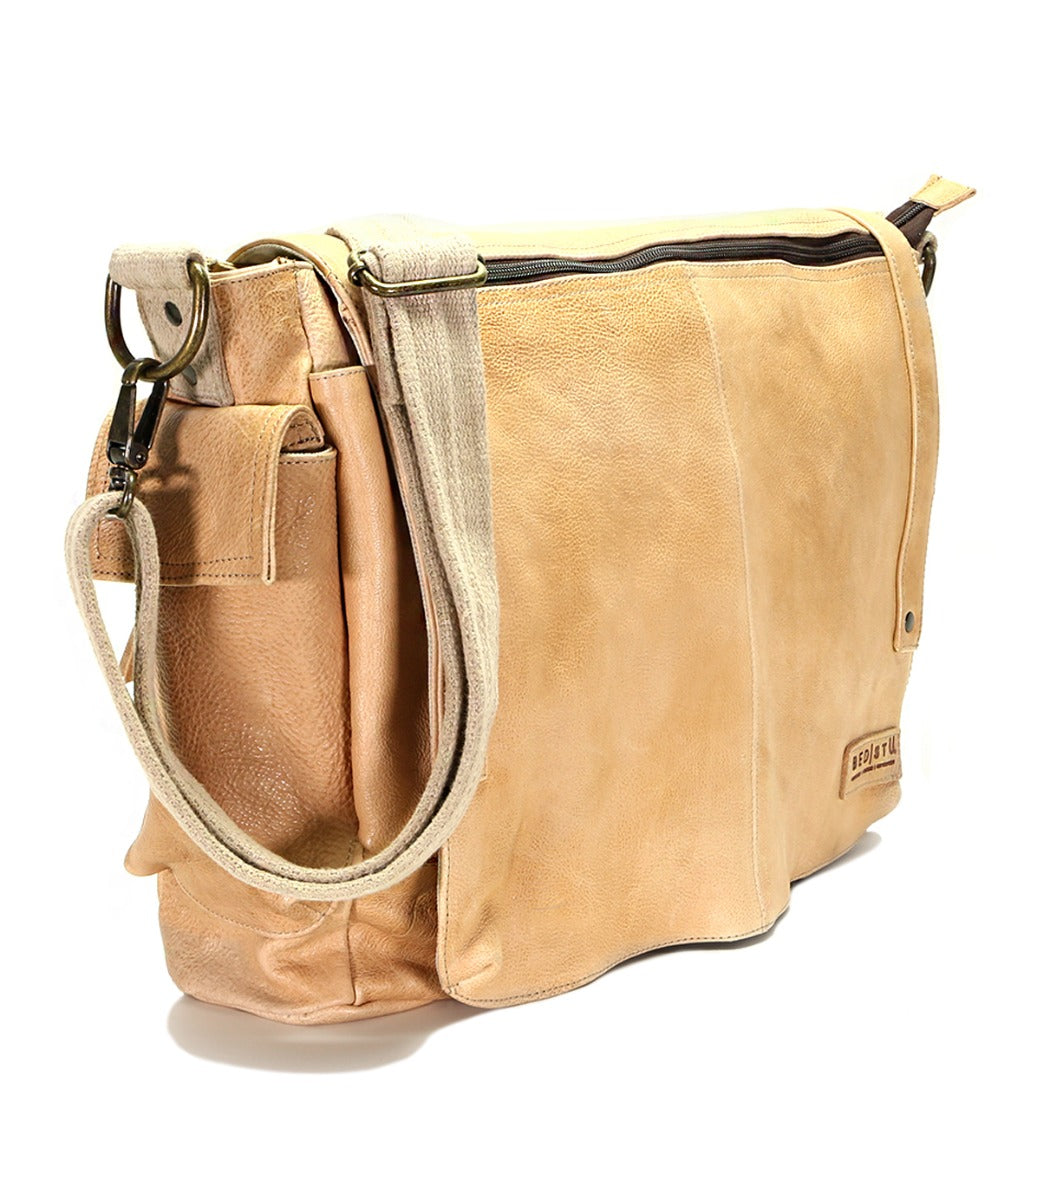 A Bed Stu Hawkeye II leather messenger bag.